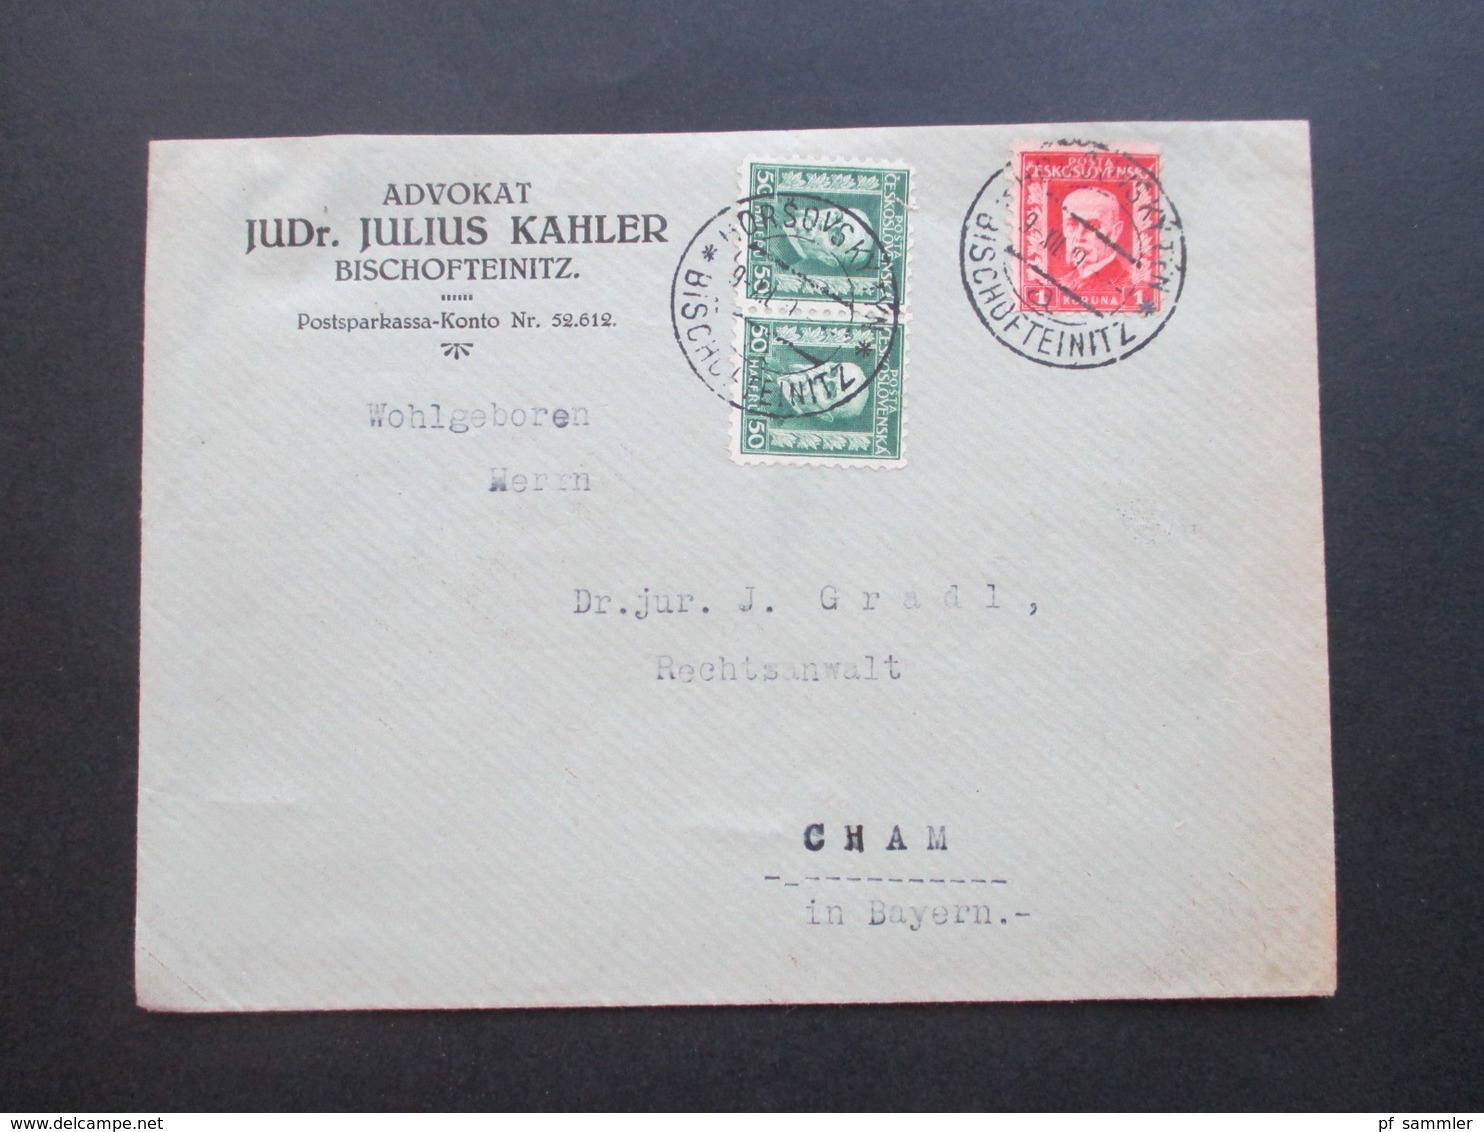 CSSR / Sudetenland 1929 Beleg Aus Bischofteinitz Advokat JUDr. Julius Kahler Zweisprachiger Stempel - Briefe U. Dokumente